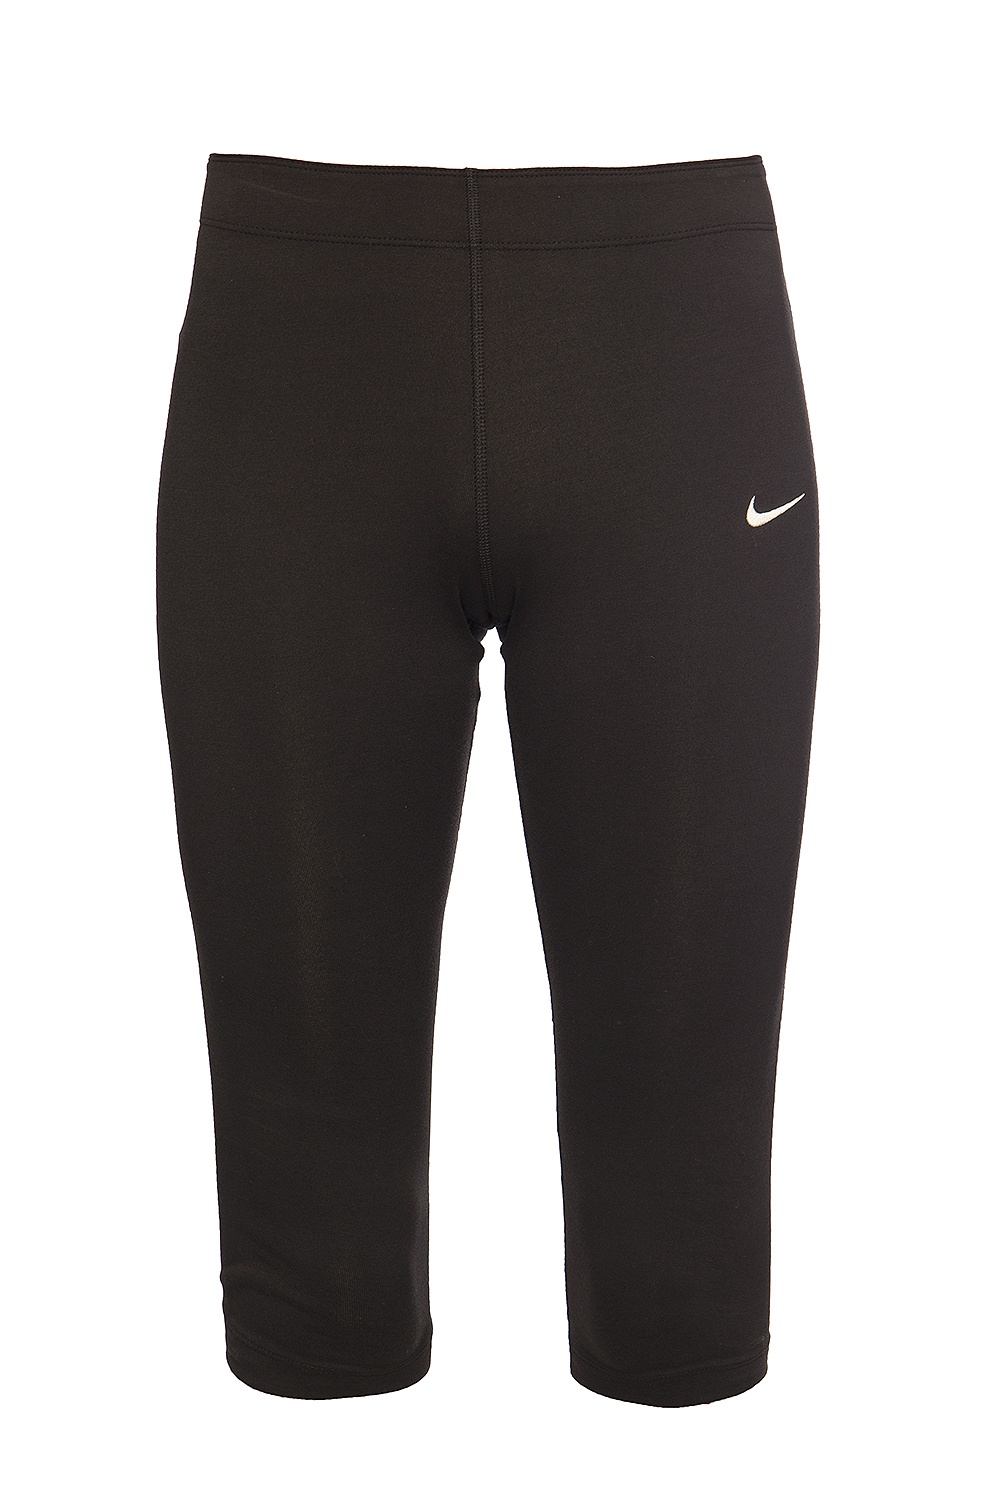 Short leggings with logo Nike - Gov US